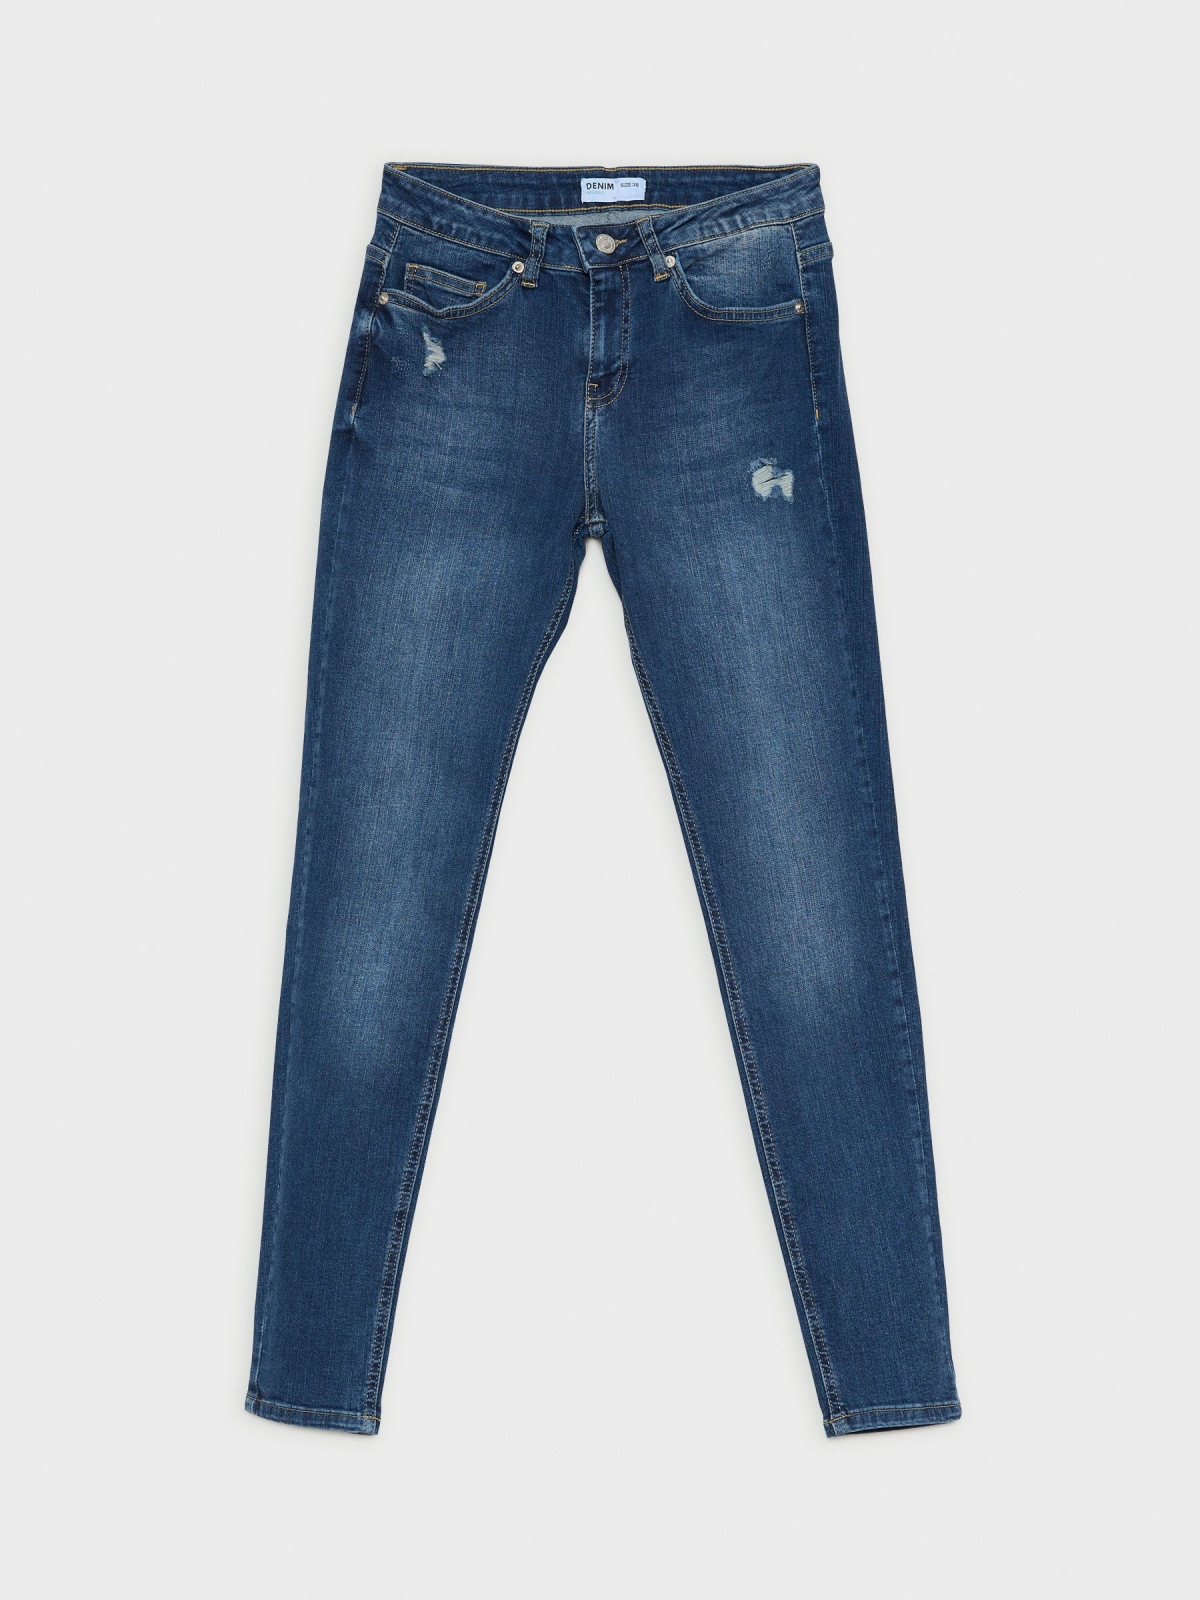  Jeans skinny de cintura média rasgada azul